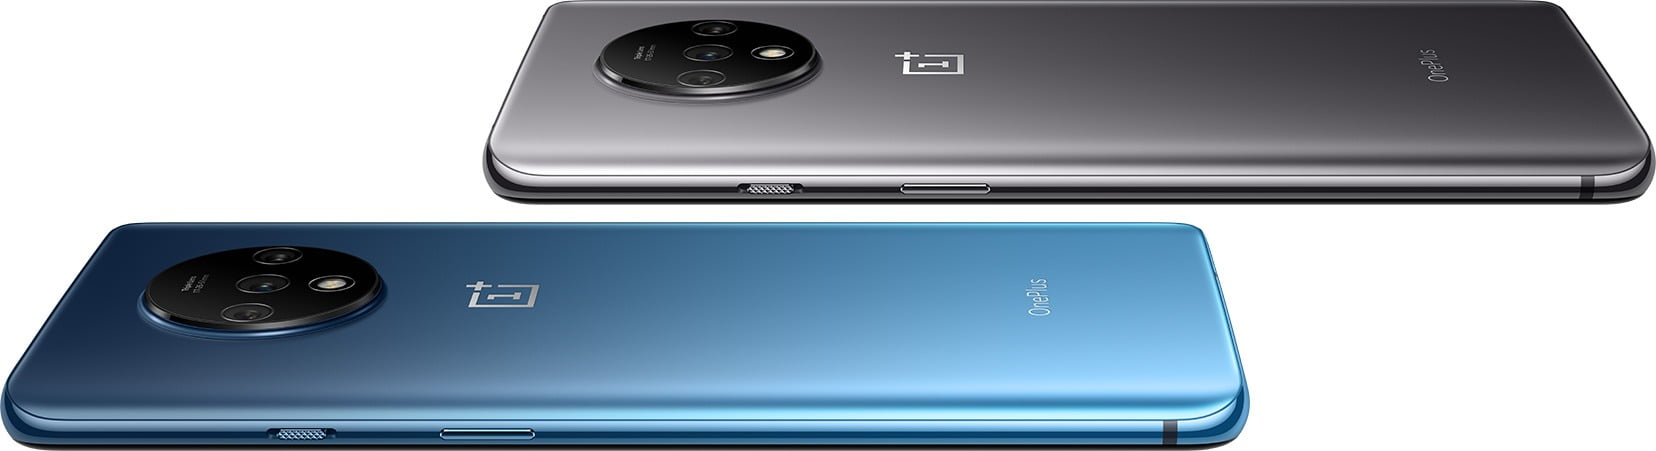 OnePlus 7T Design